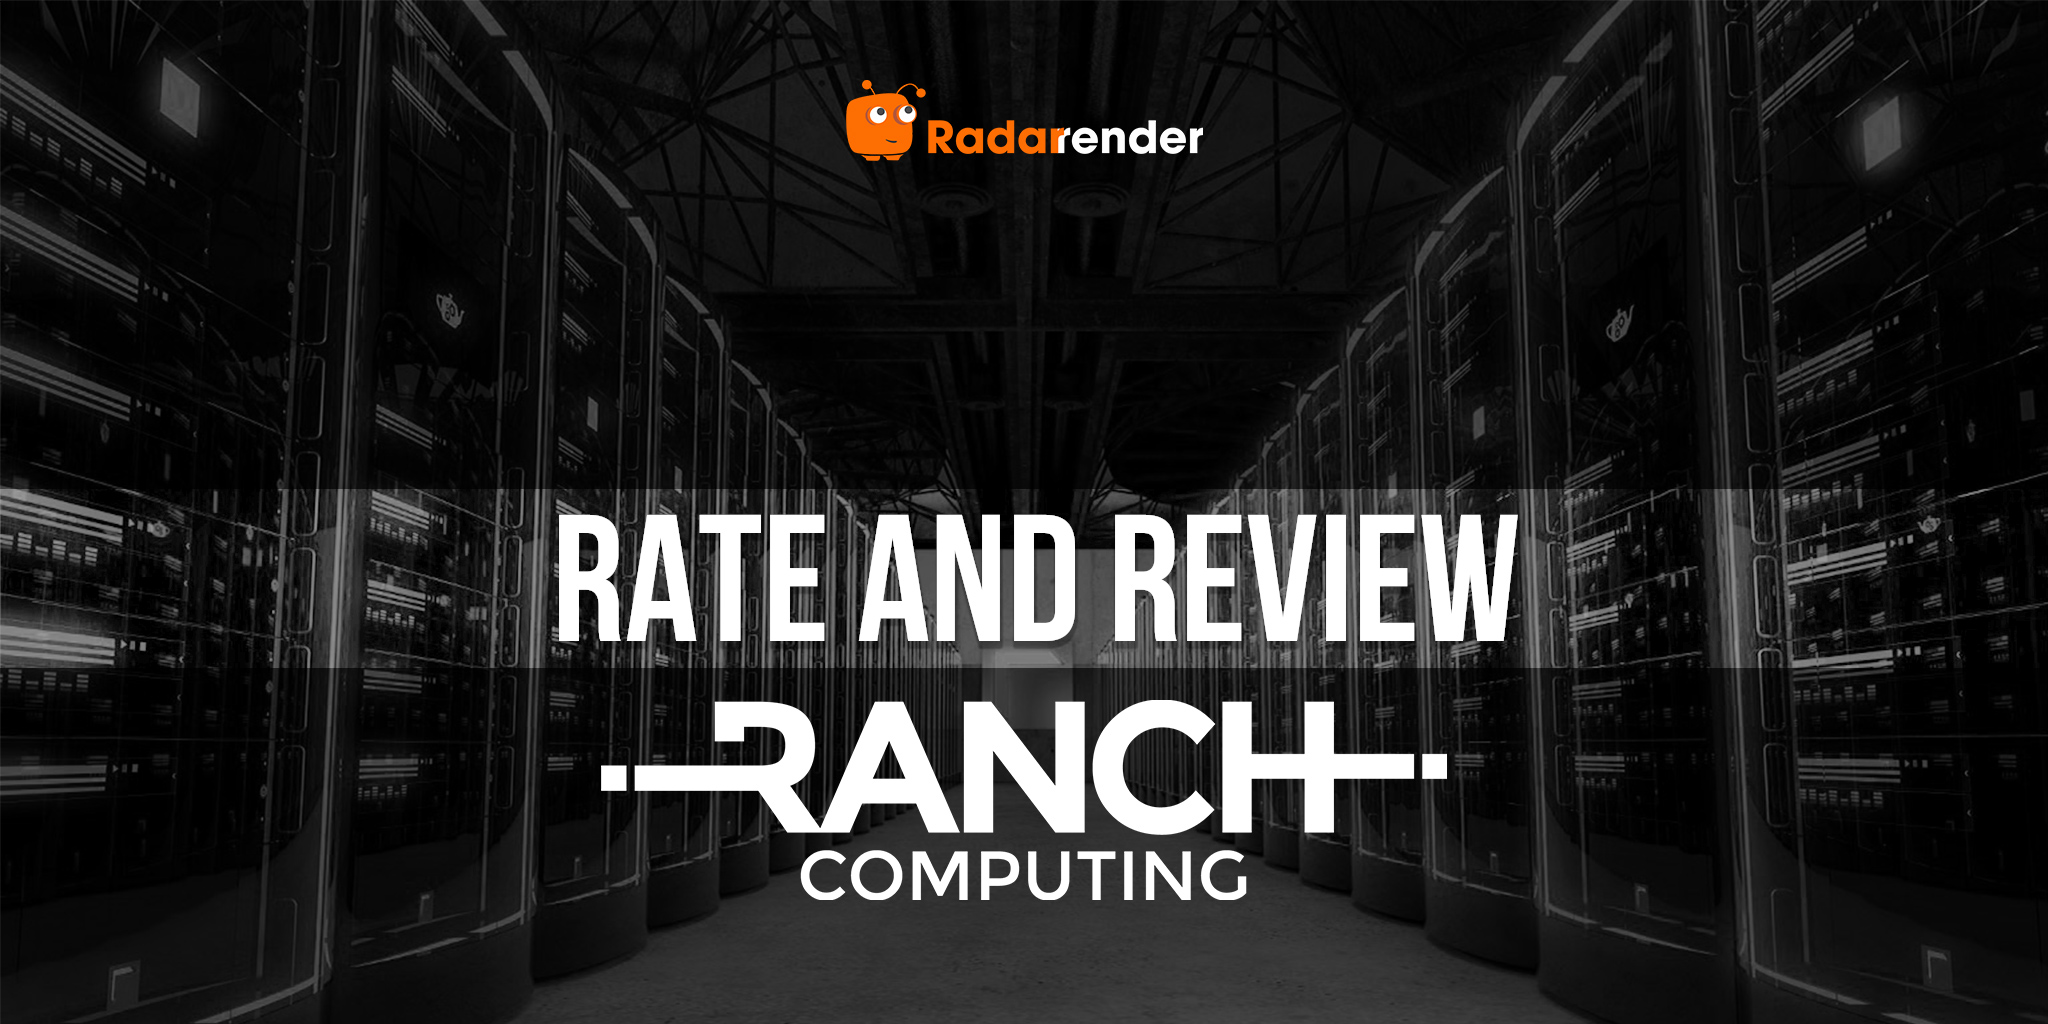 RANCH Computing